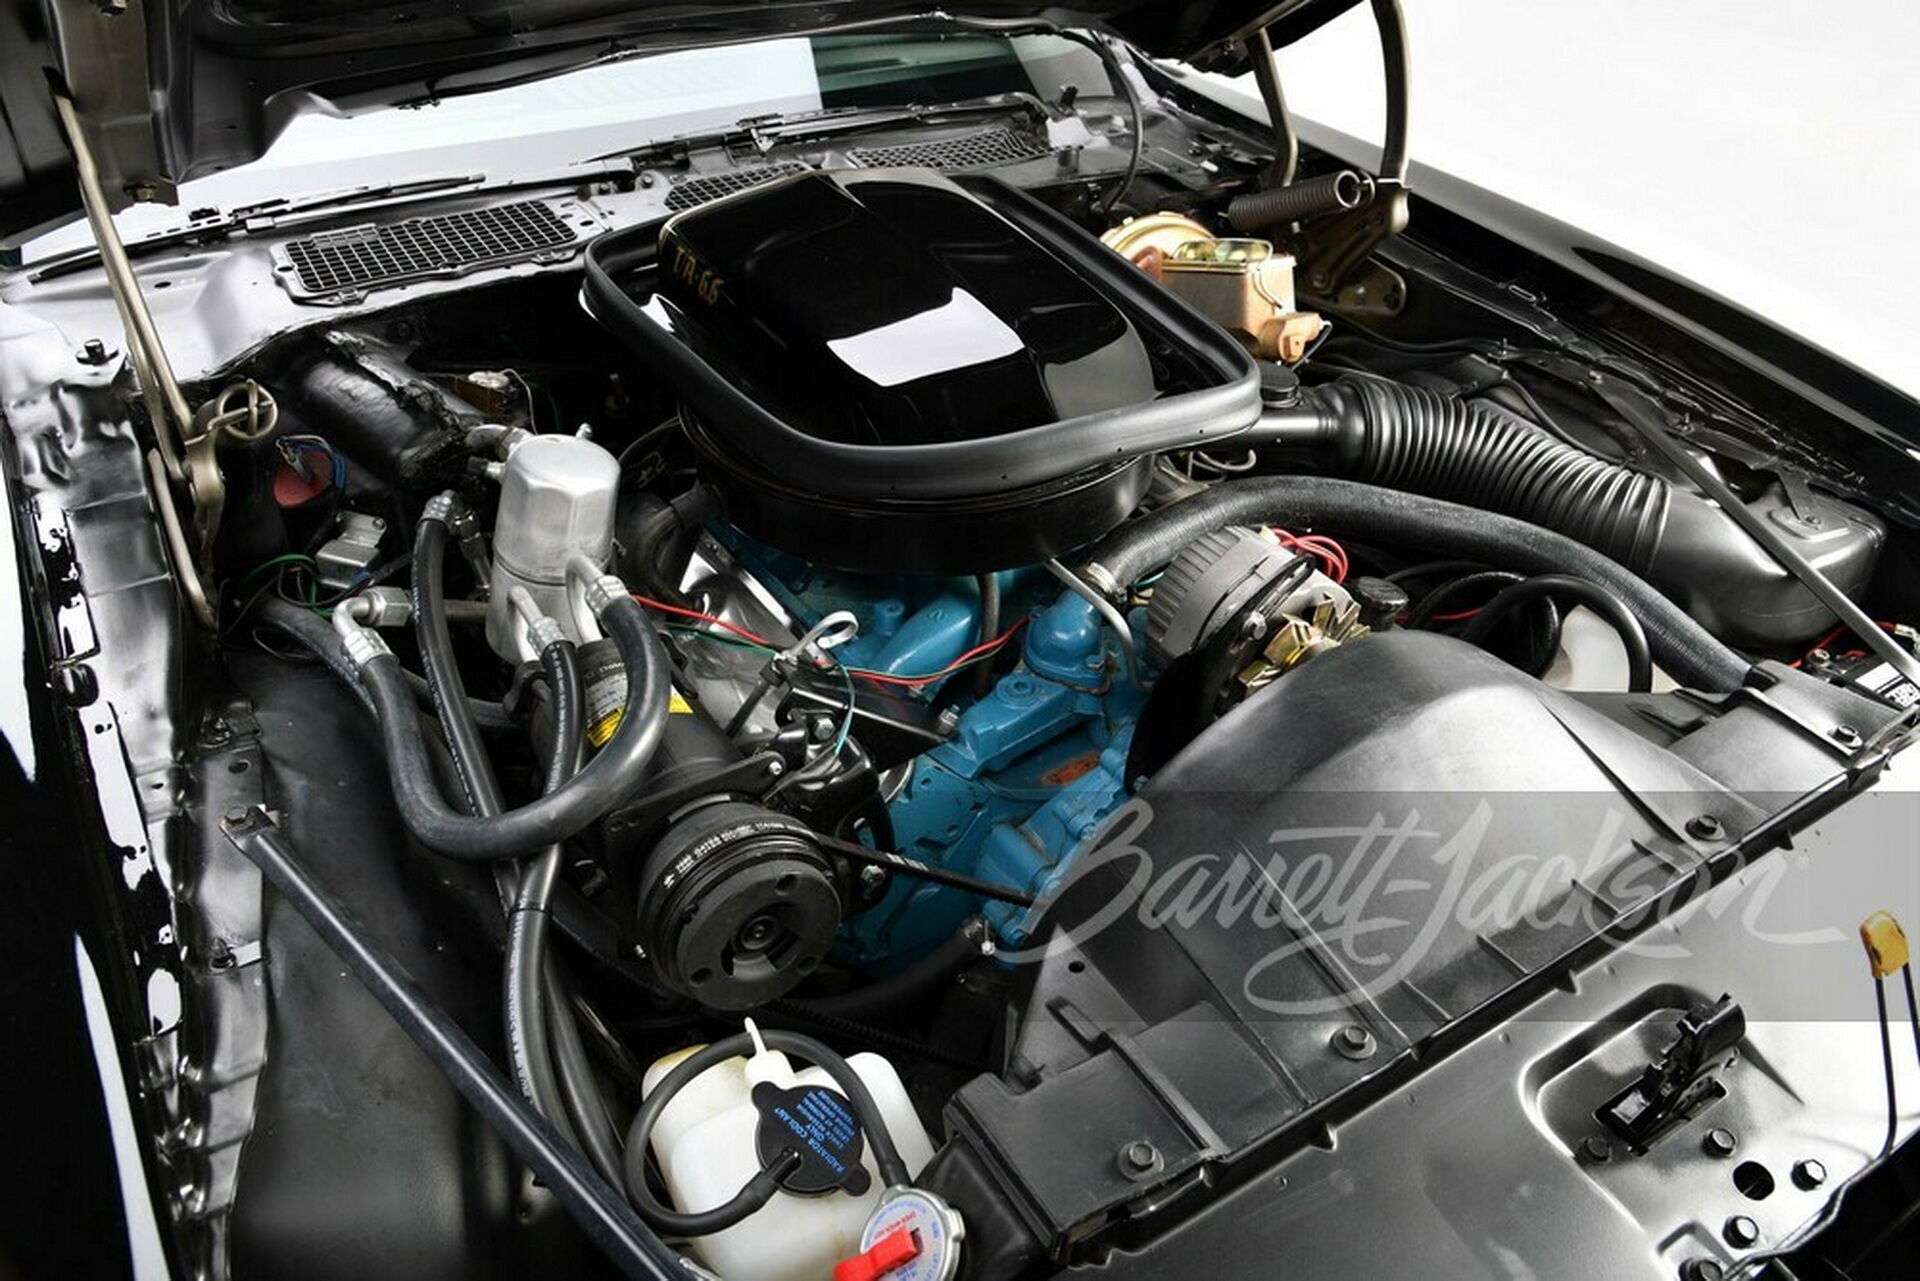 Под капотом машины располагается 6,6-литровый мотор Pontiac V8, который развивает мощность 182 л.с.